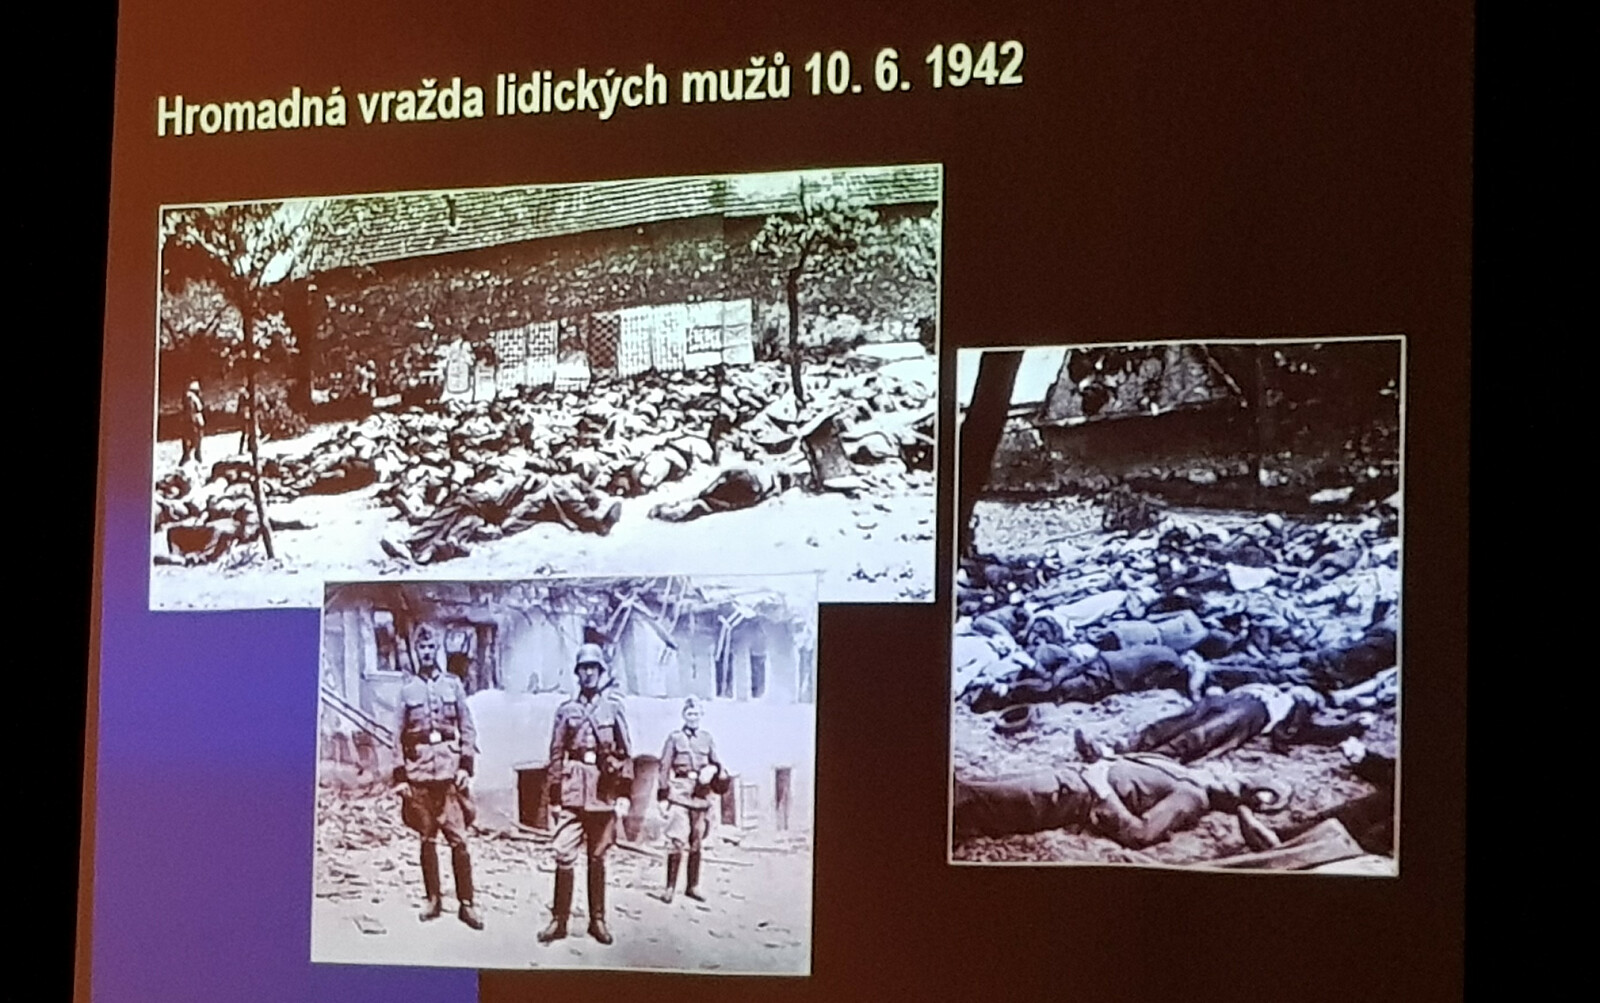 Archiwalne zdjęcia z pacyfikacji Lidic - rozstrzelani meżczyźni. Materiał z prezentacji dr. Eduarda Stehnika